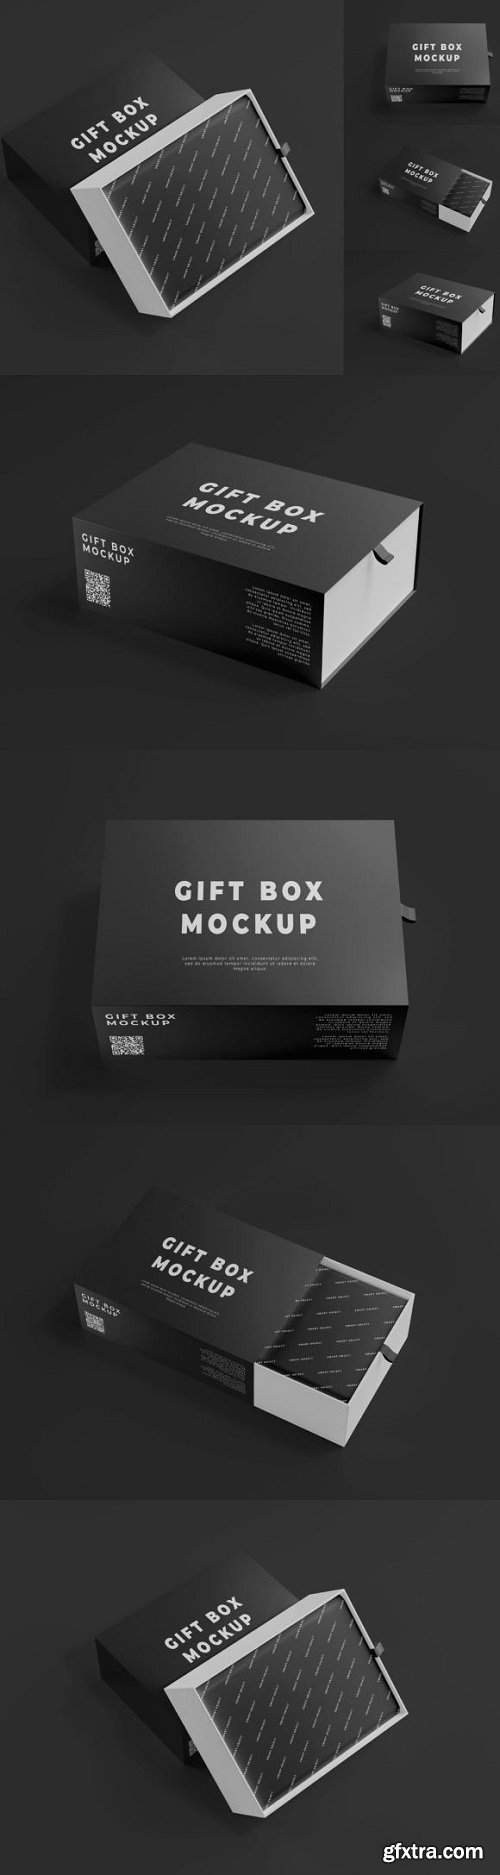 Bundle Gift Box Mockup